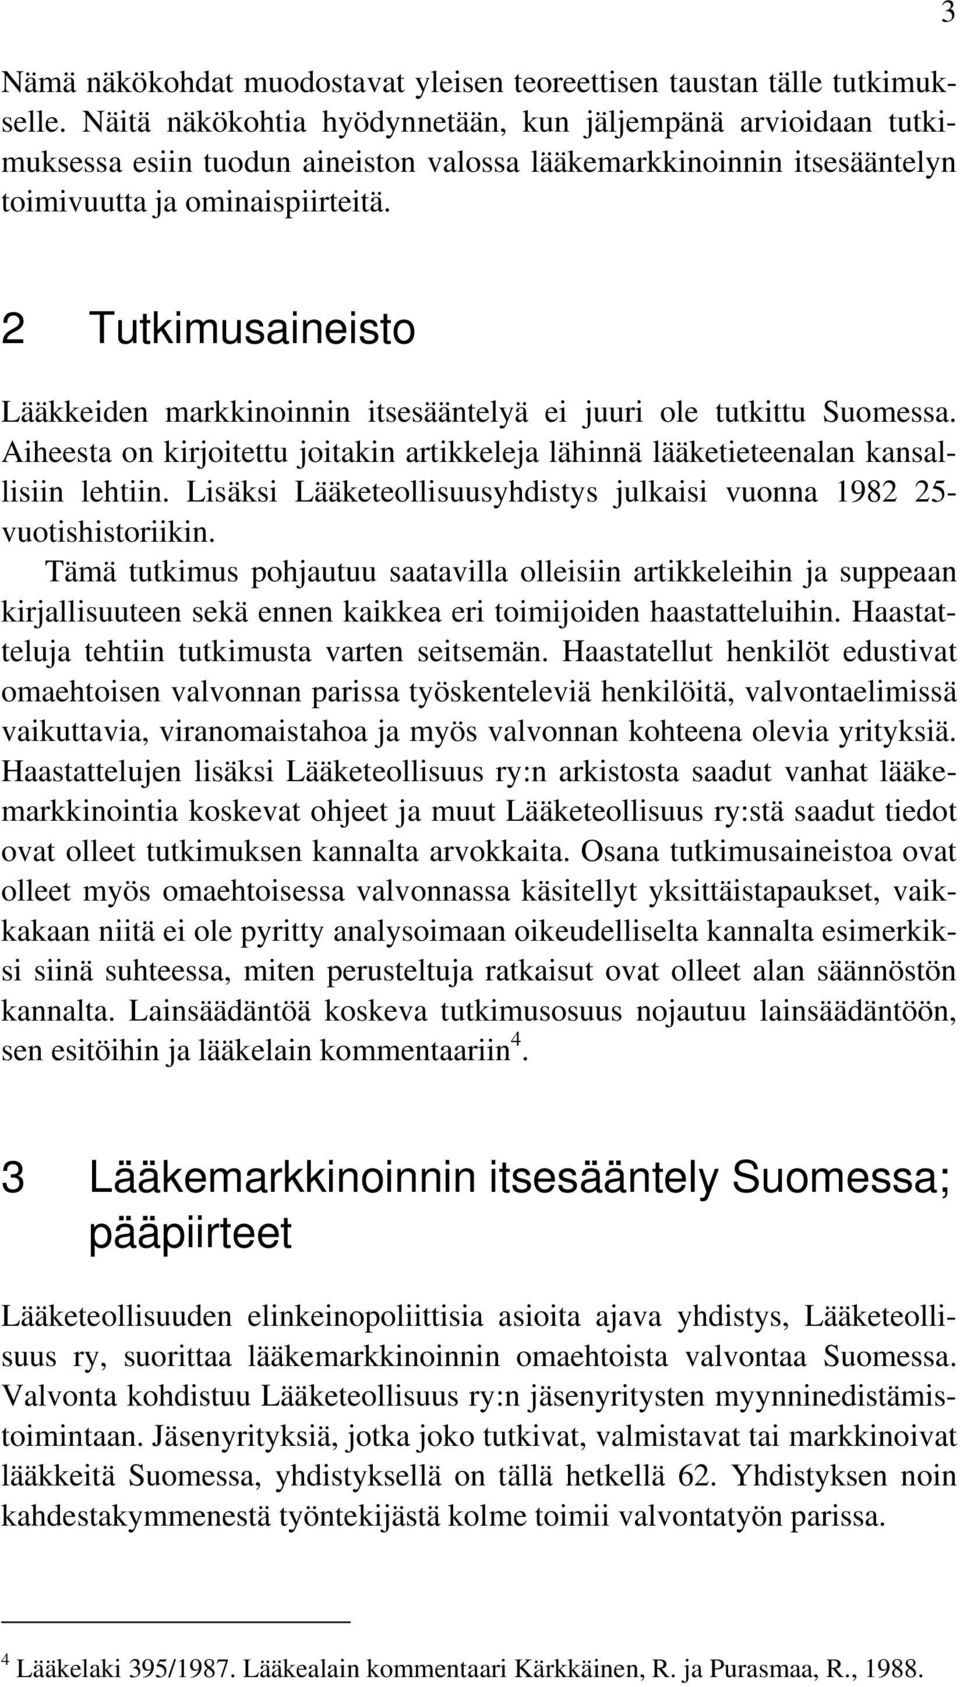 3 2 Tutkimusaineisto Lääkkeiden markkinoinnin itsesääntelyä ei juuri ole tutkittu Suomessa. Aiheesta on kirjoitettu joitakin artikkeleja lähinnä lääketieteenalan kansallisiin lehtiin.